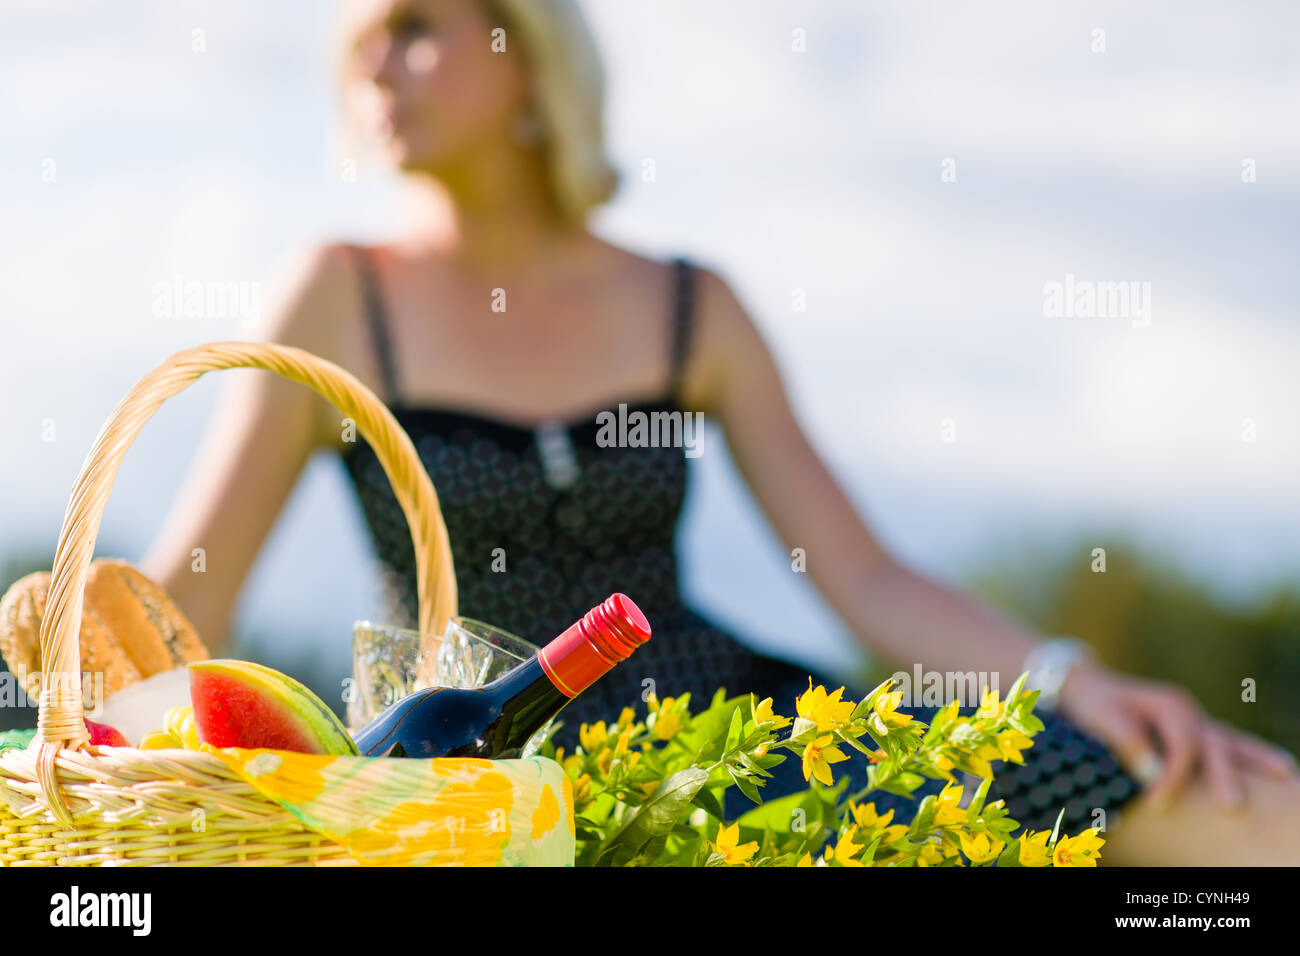 Picknick-Korb und Frau aus dem Blickfeld auf Hintergrund, Horizont-format Stockfoto